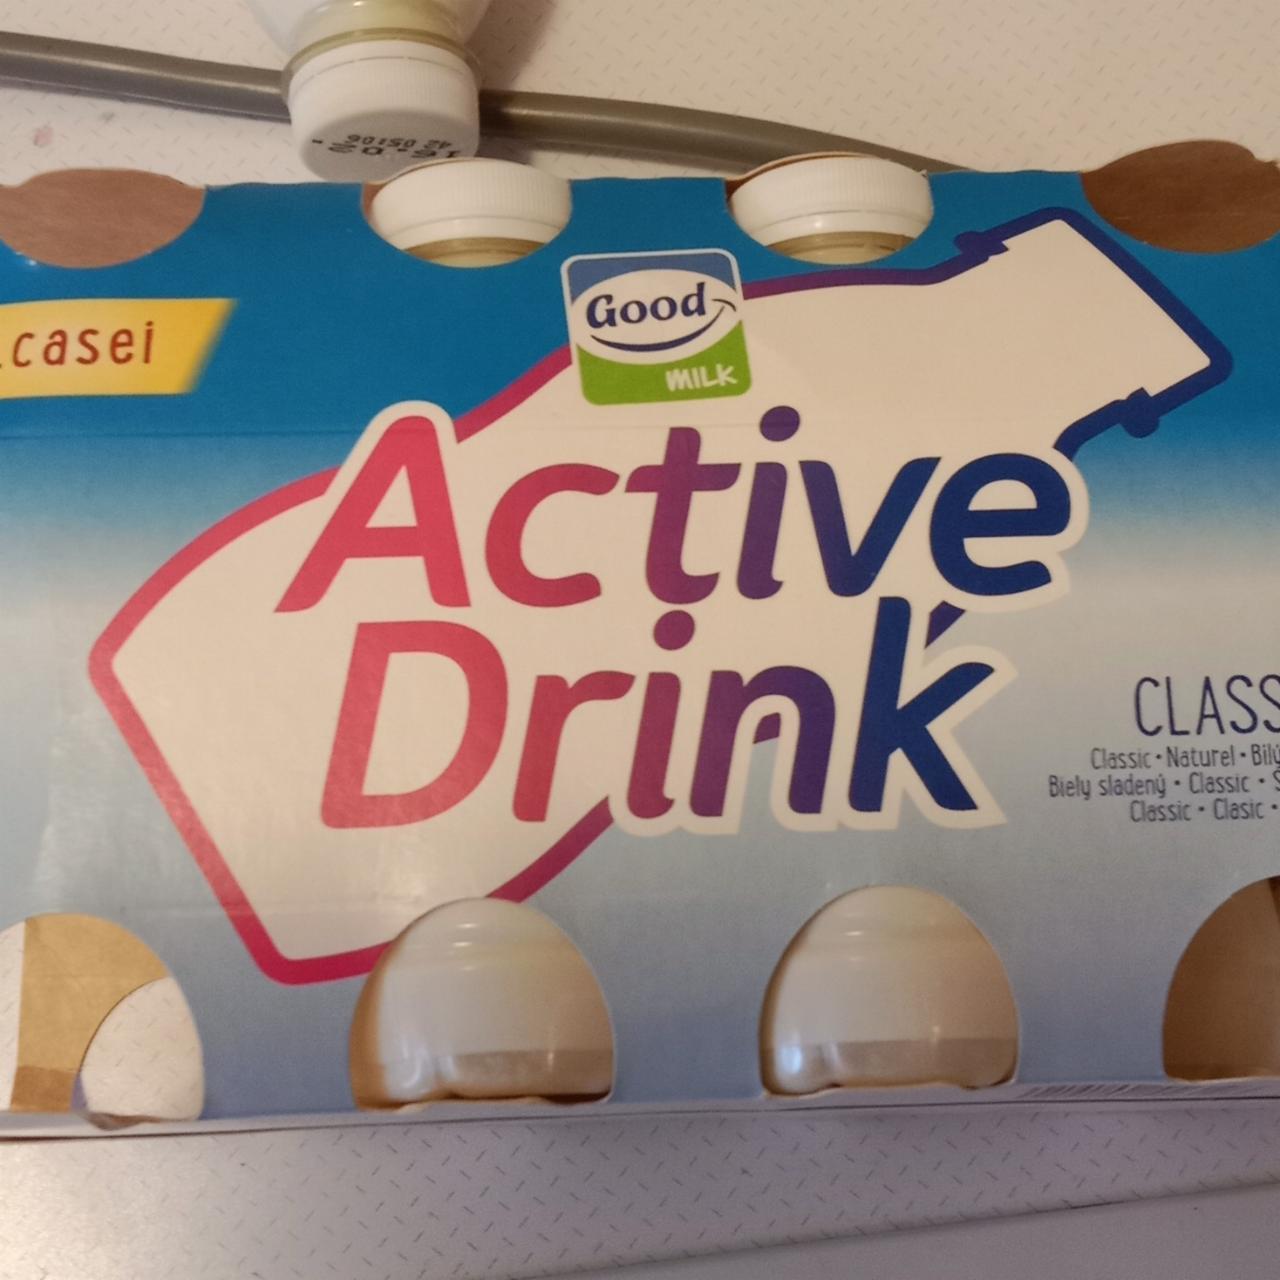 Fotografie - Active drink classic Good Milk